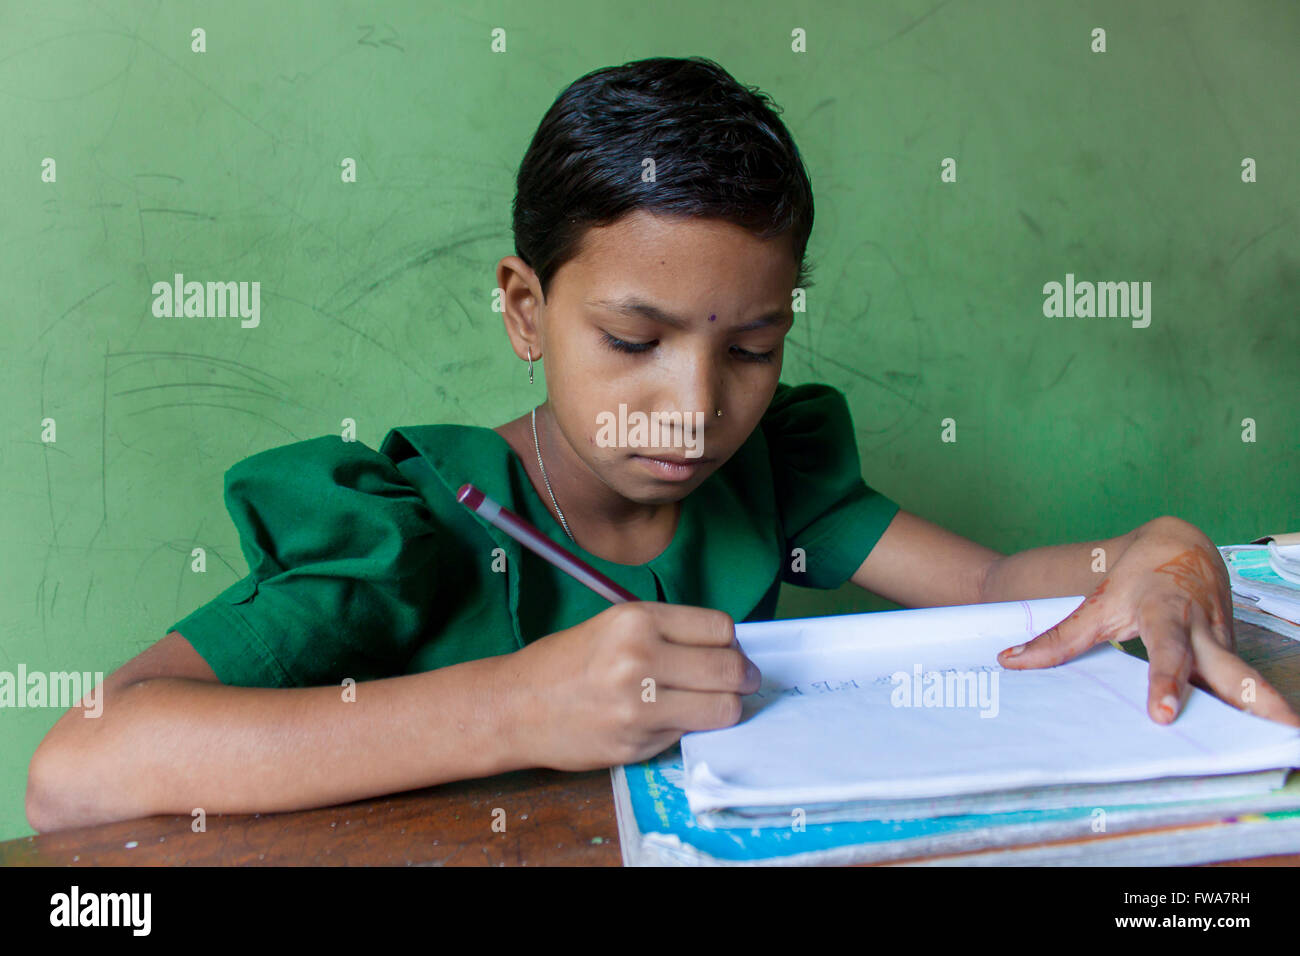 Ein kleines Mädchen schreiben Ngo ländlichen Grundschule Klassenzimmer unterstützt bei System Center, tangail, Dhaka © jahangir Alam onuchcha/alamy Stockfoto